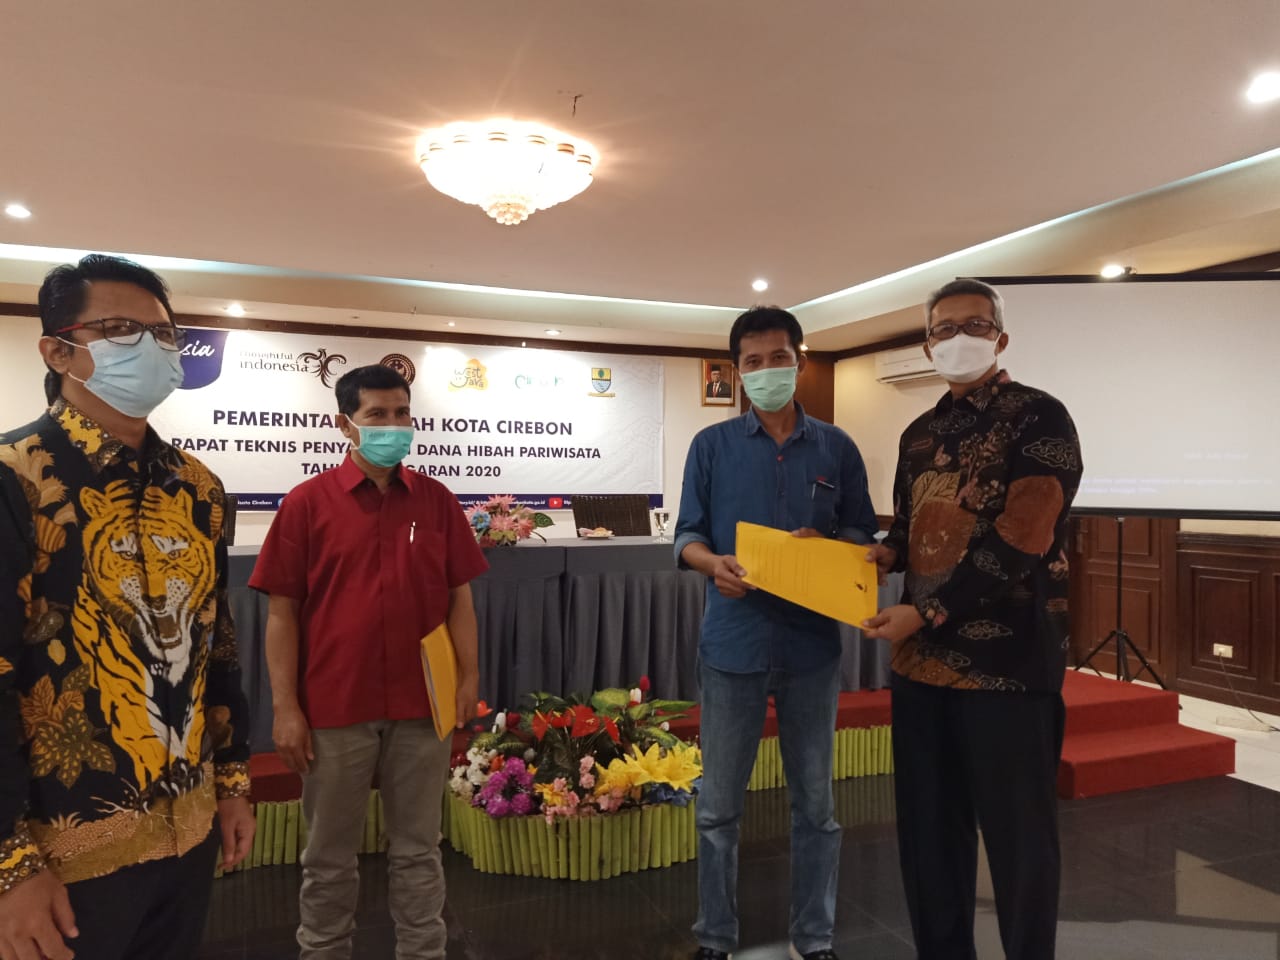 Pengusaha di Kota Cirebon Diminta Konsisten Terapkan Protokol Kesehatan